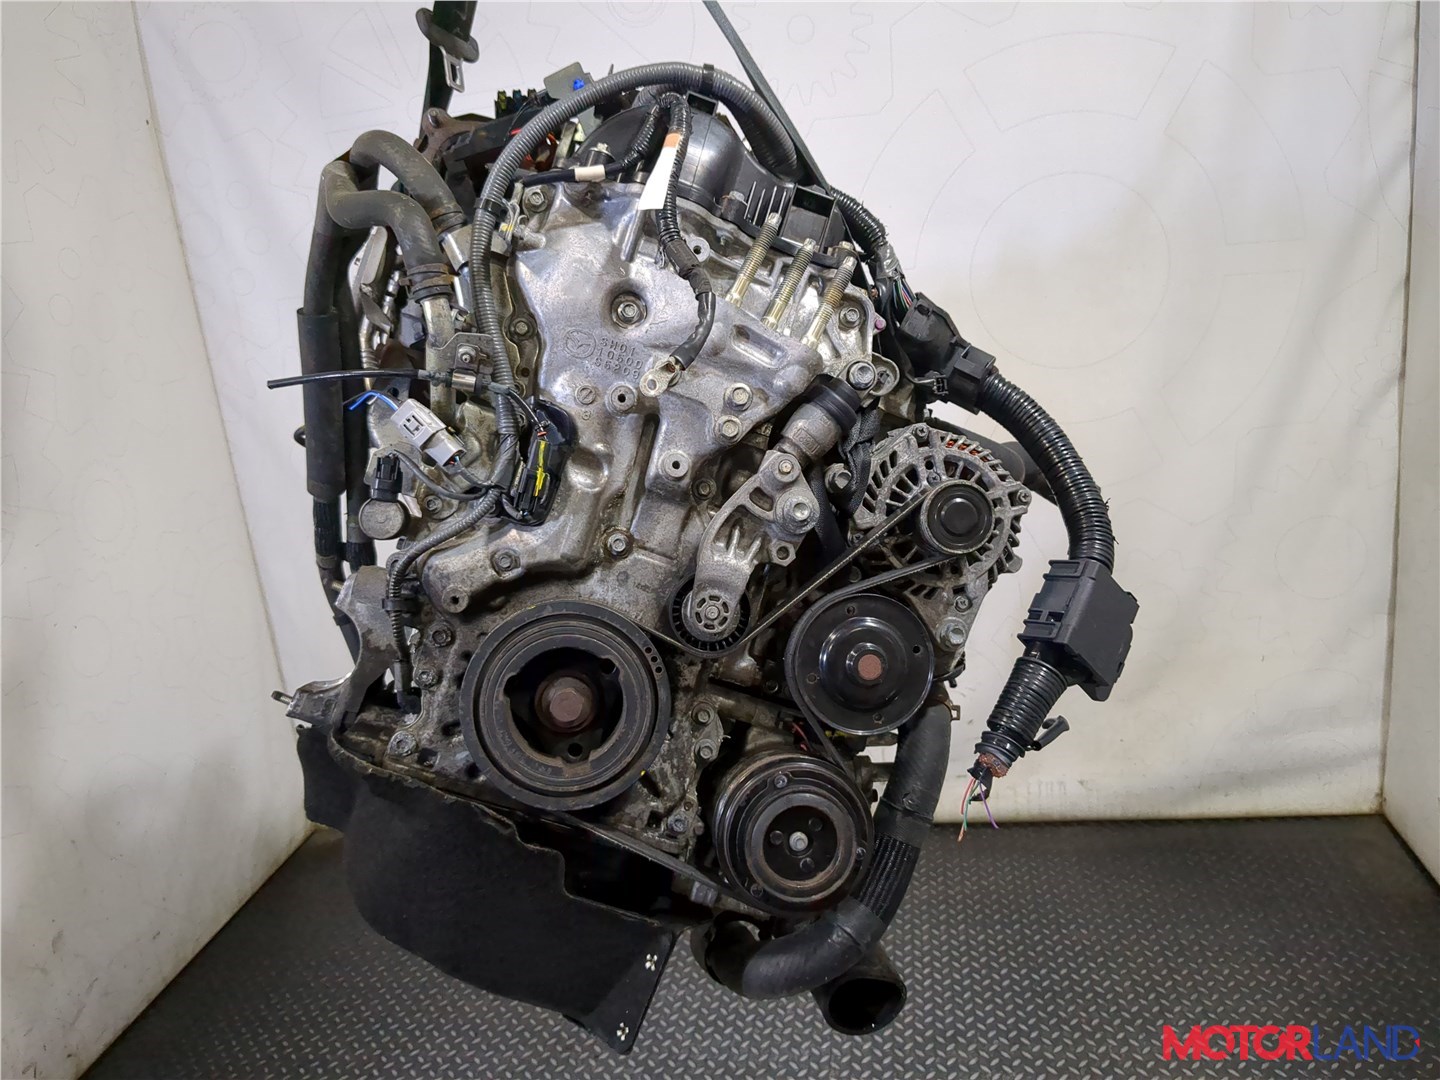 Топ-5 интересных моторов от компании Mazda